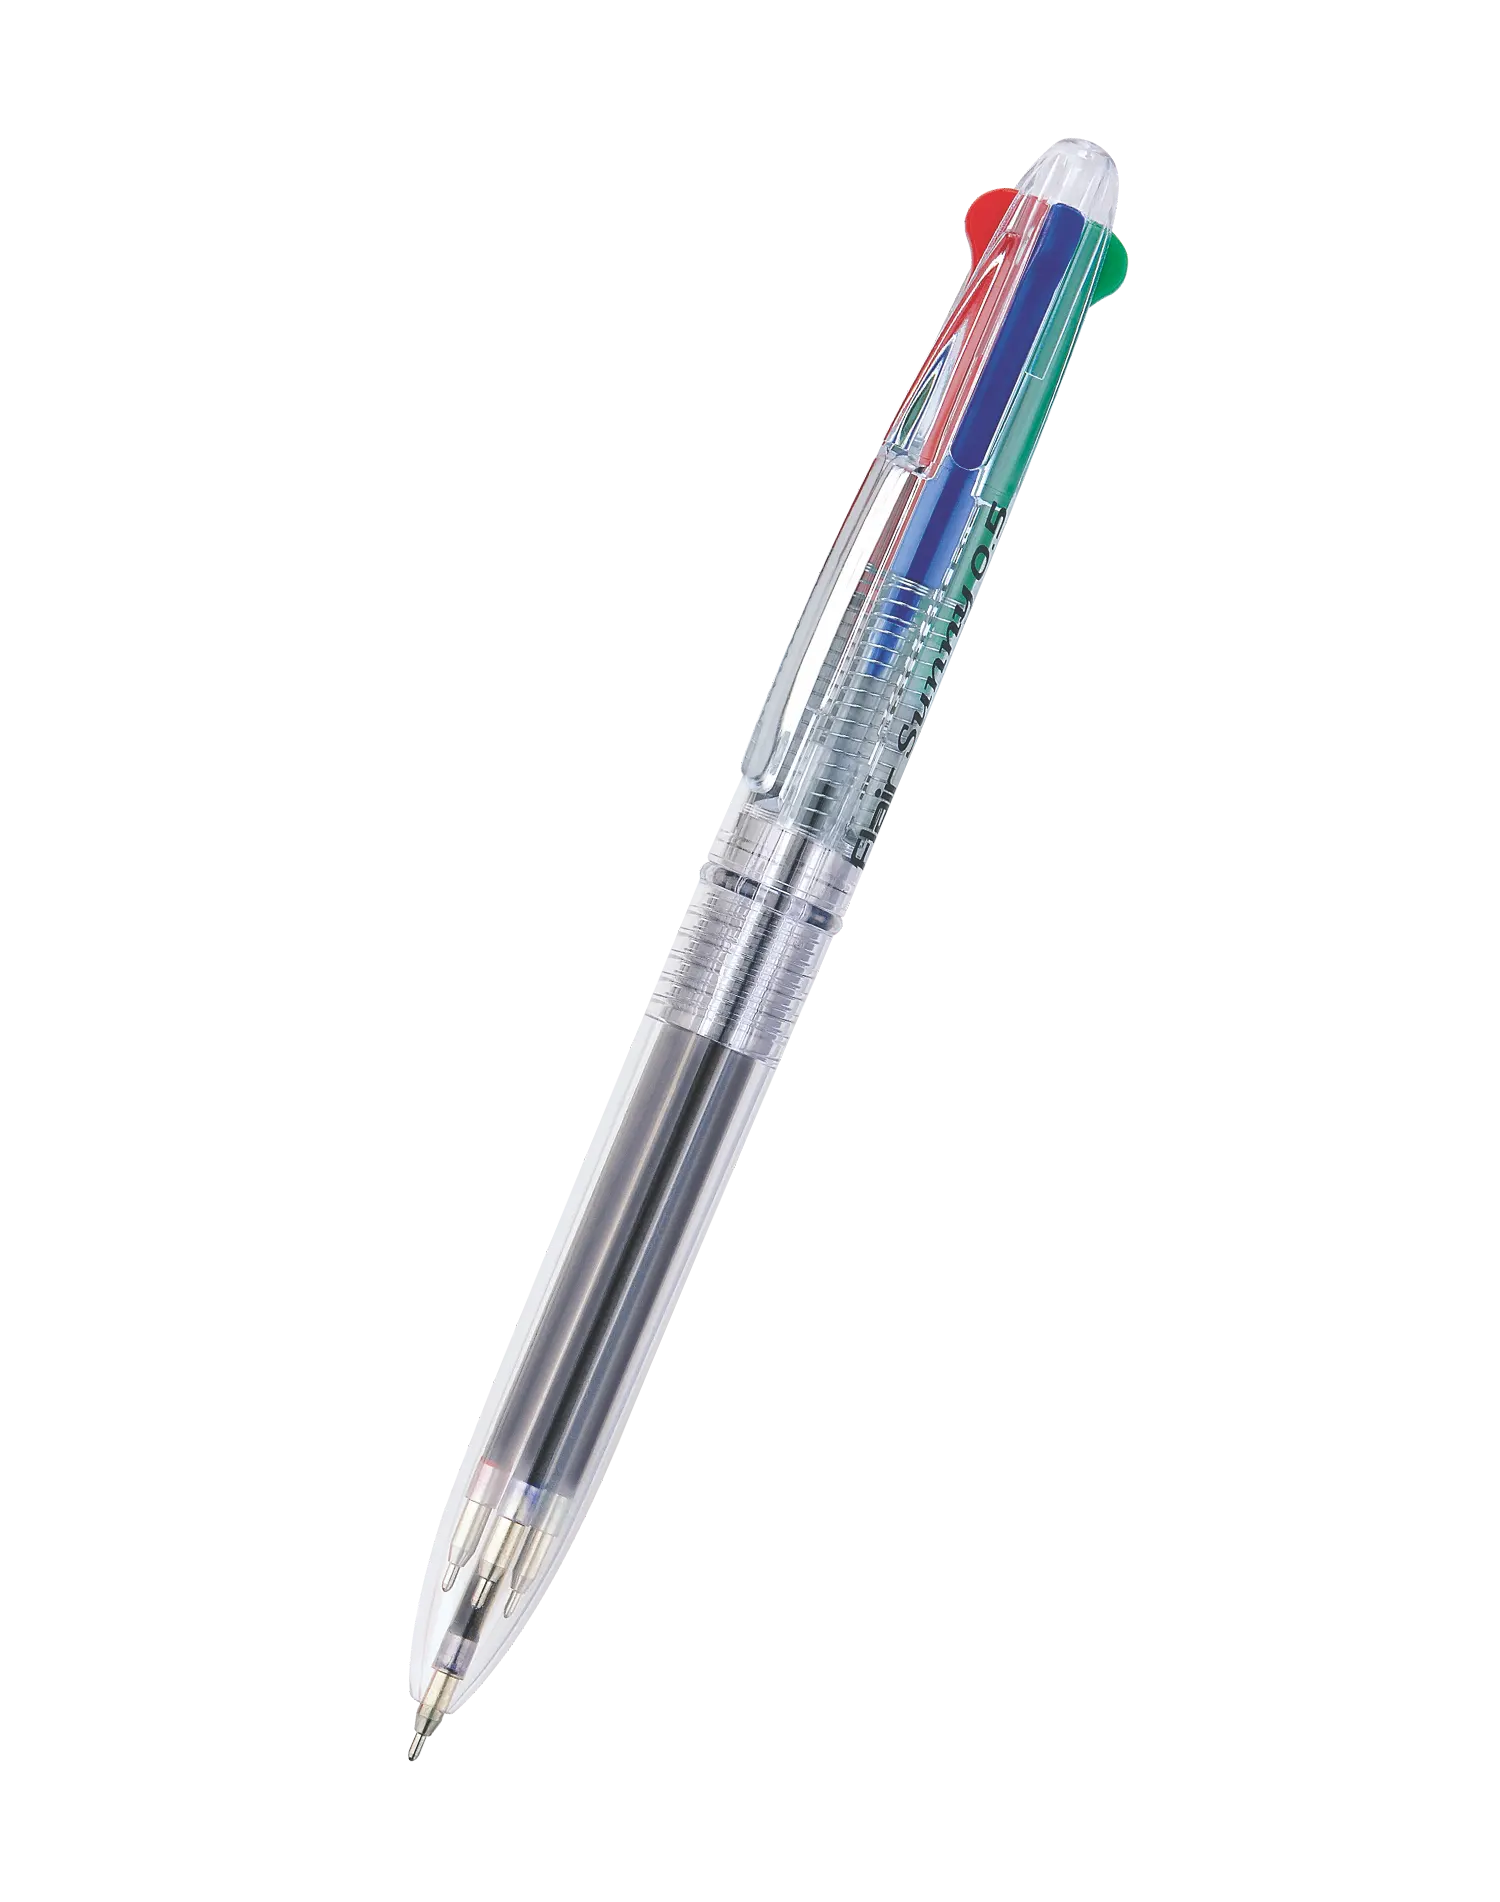 FLAIR Sunny Retractable Ball Pen, 4 Colors in 1 , Fine Writing Ball Pen -  Buy FLAIR Sunny Retractable Ball Pen